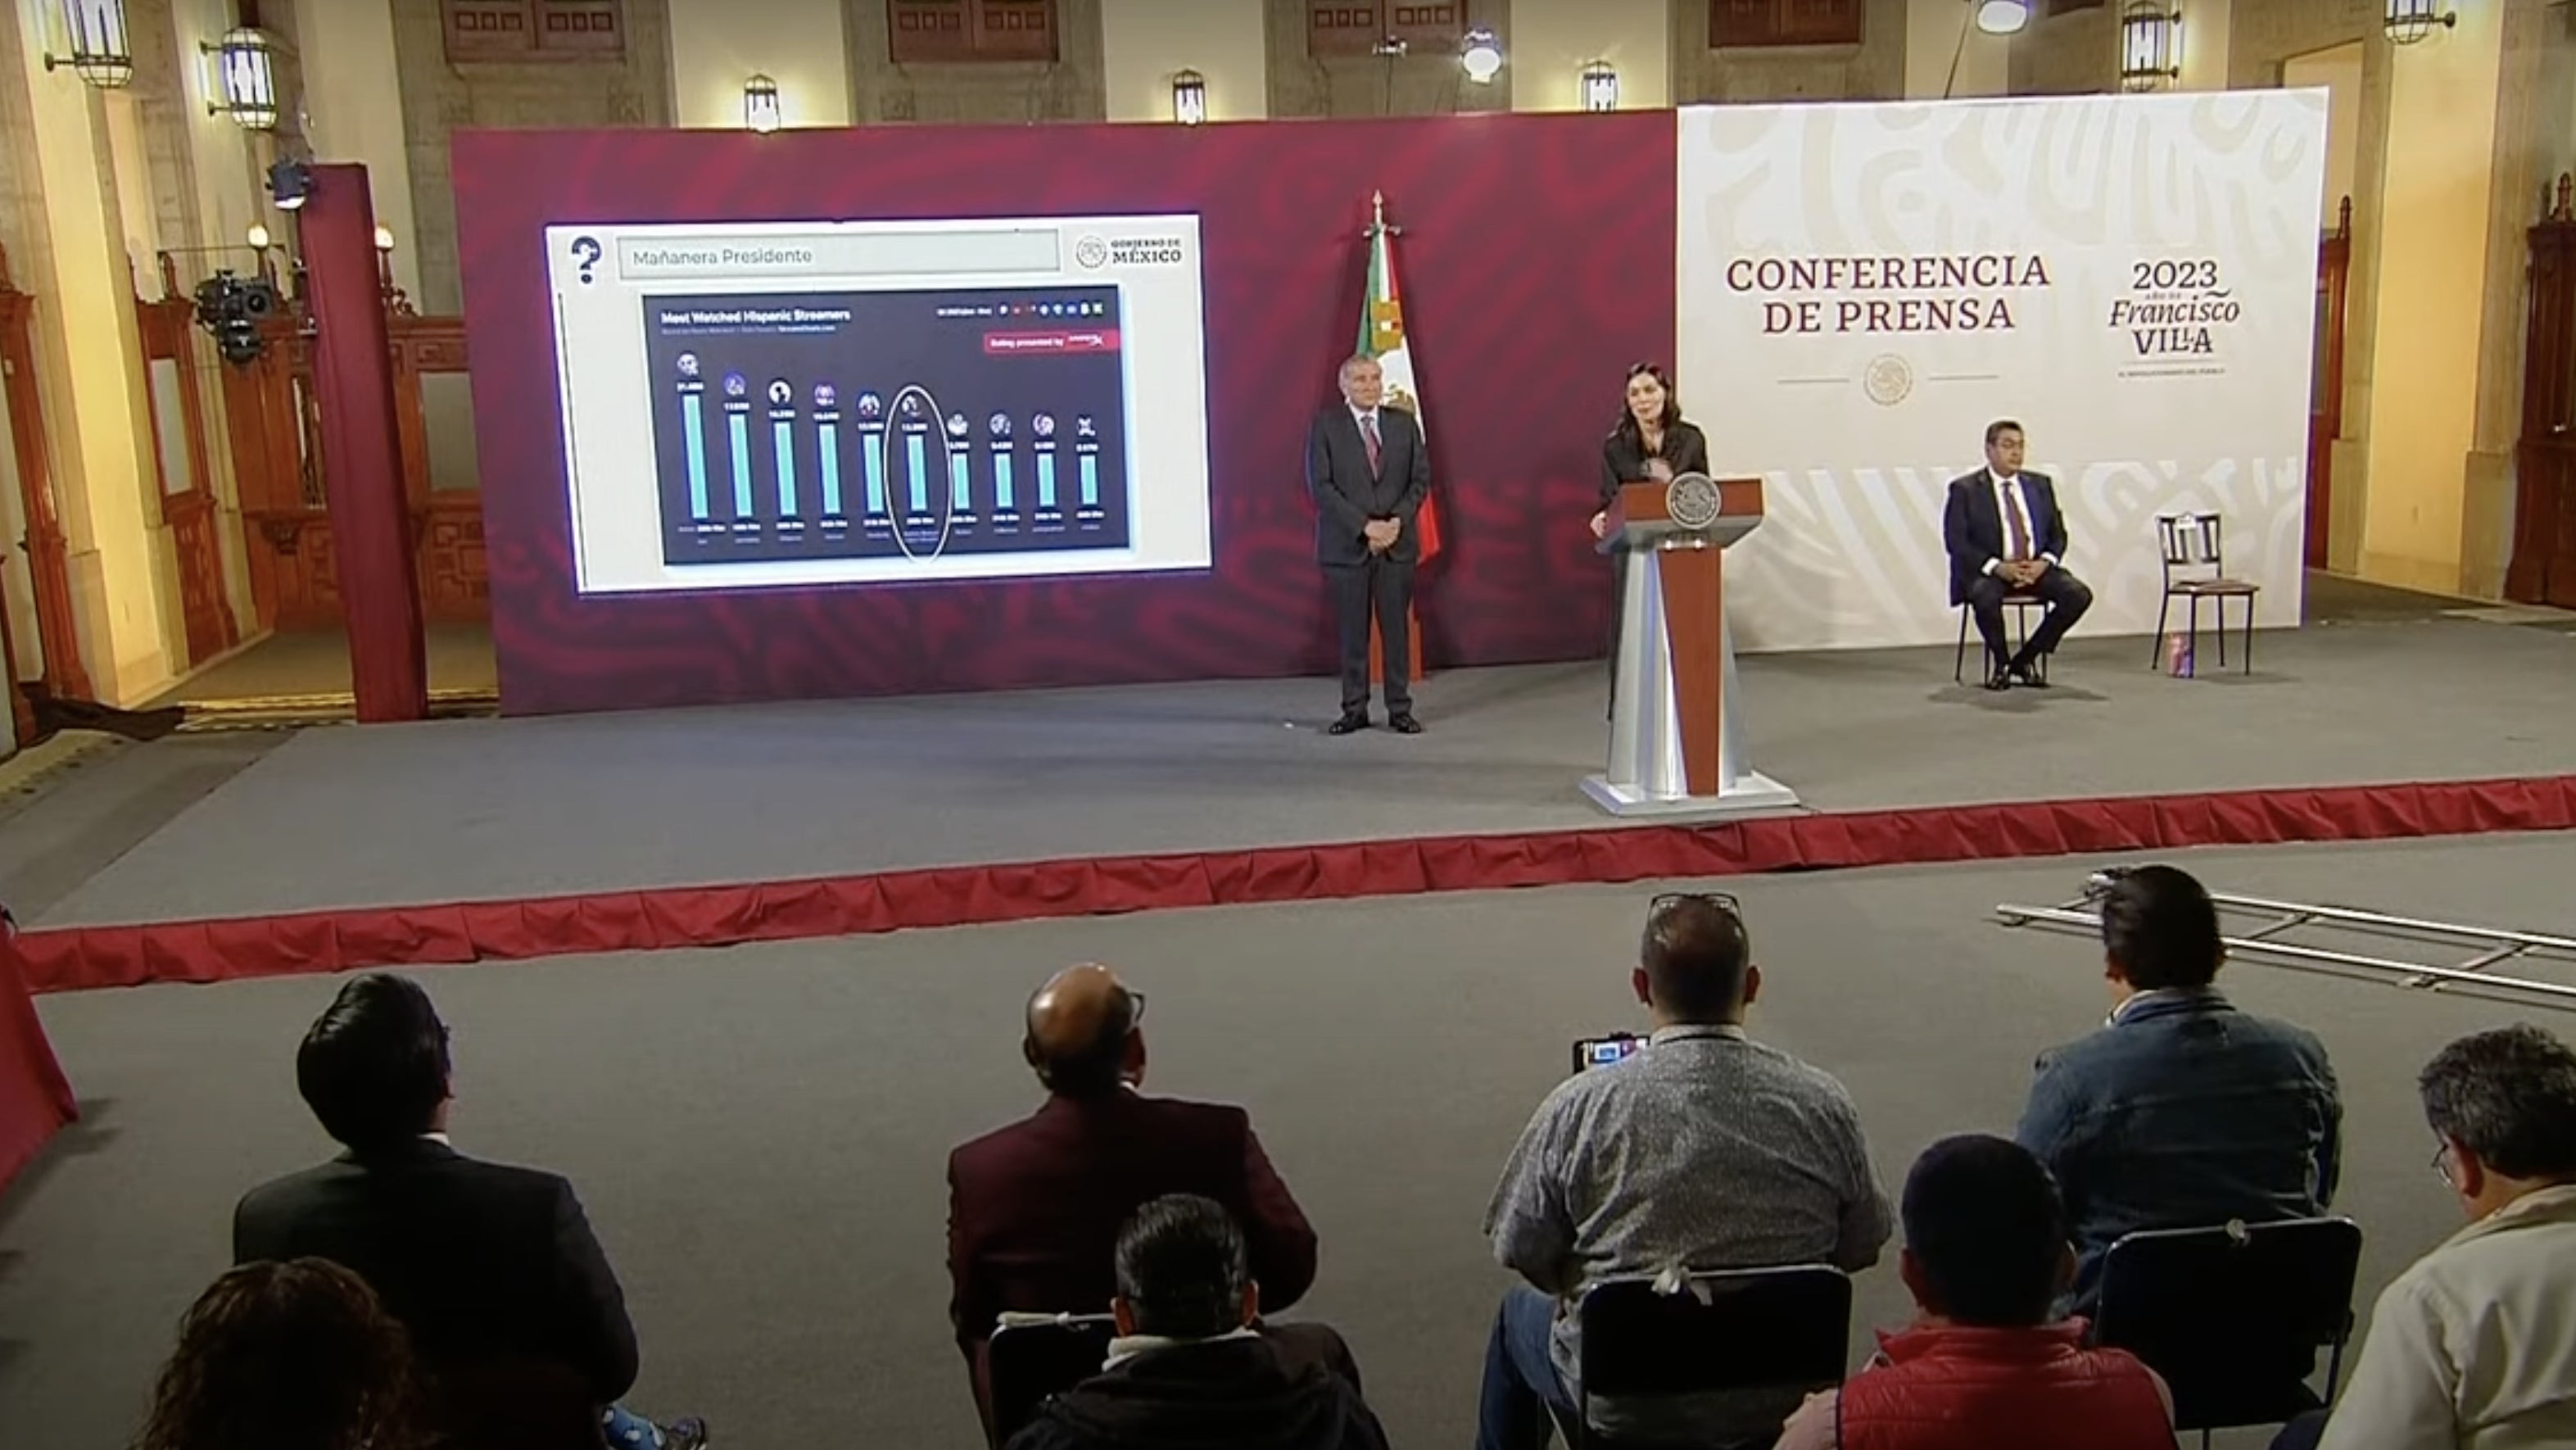 لقطة شاشة للمؤتمر الصحفي الذي تم بثه على الهواء مباشرة من الحكومة المكسيكية يوم الأربعاء 26 أبريل 2023.